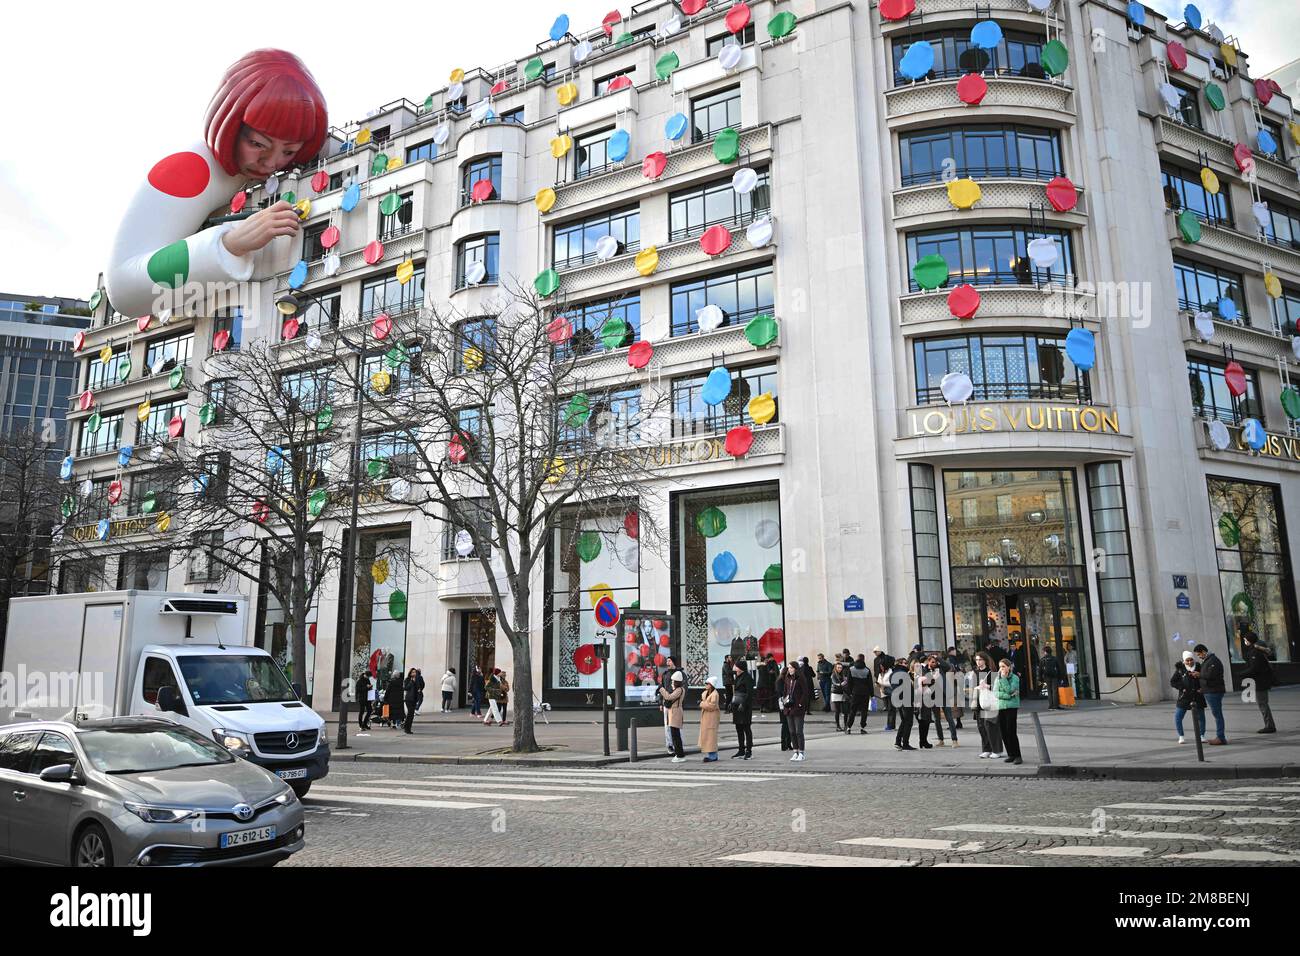 PHOTOS - Façade de la Maison Louis Vuitton des Champs-Elysées